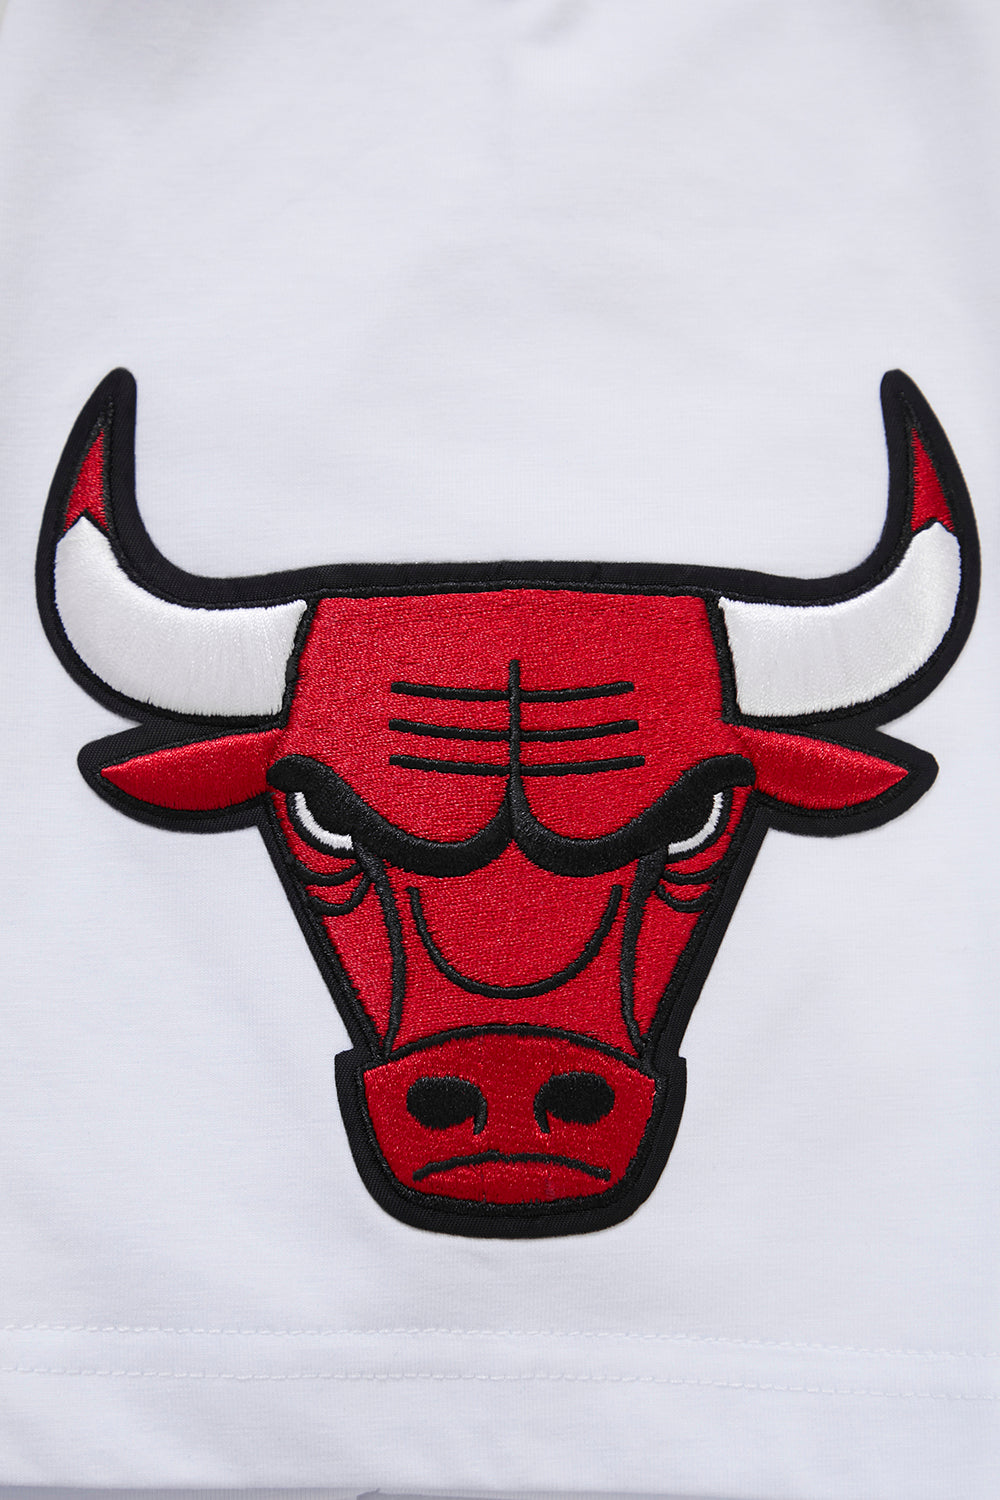 Men's Chicago Bulls Pro Standard White Capsule Baseball Button-Up Shirt